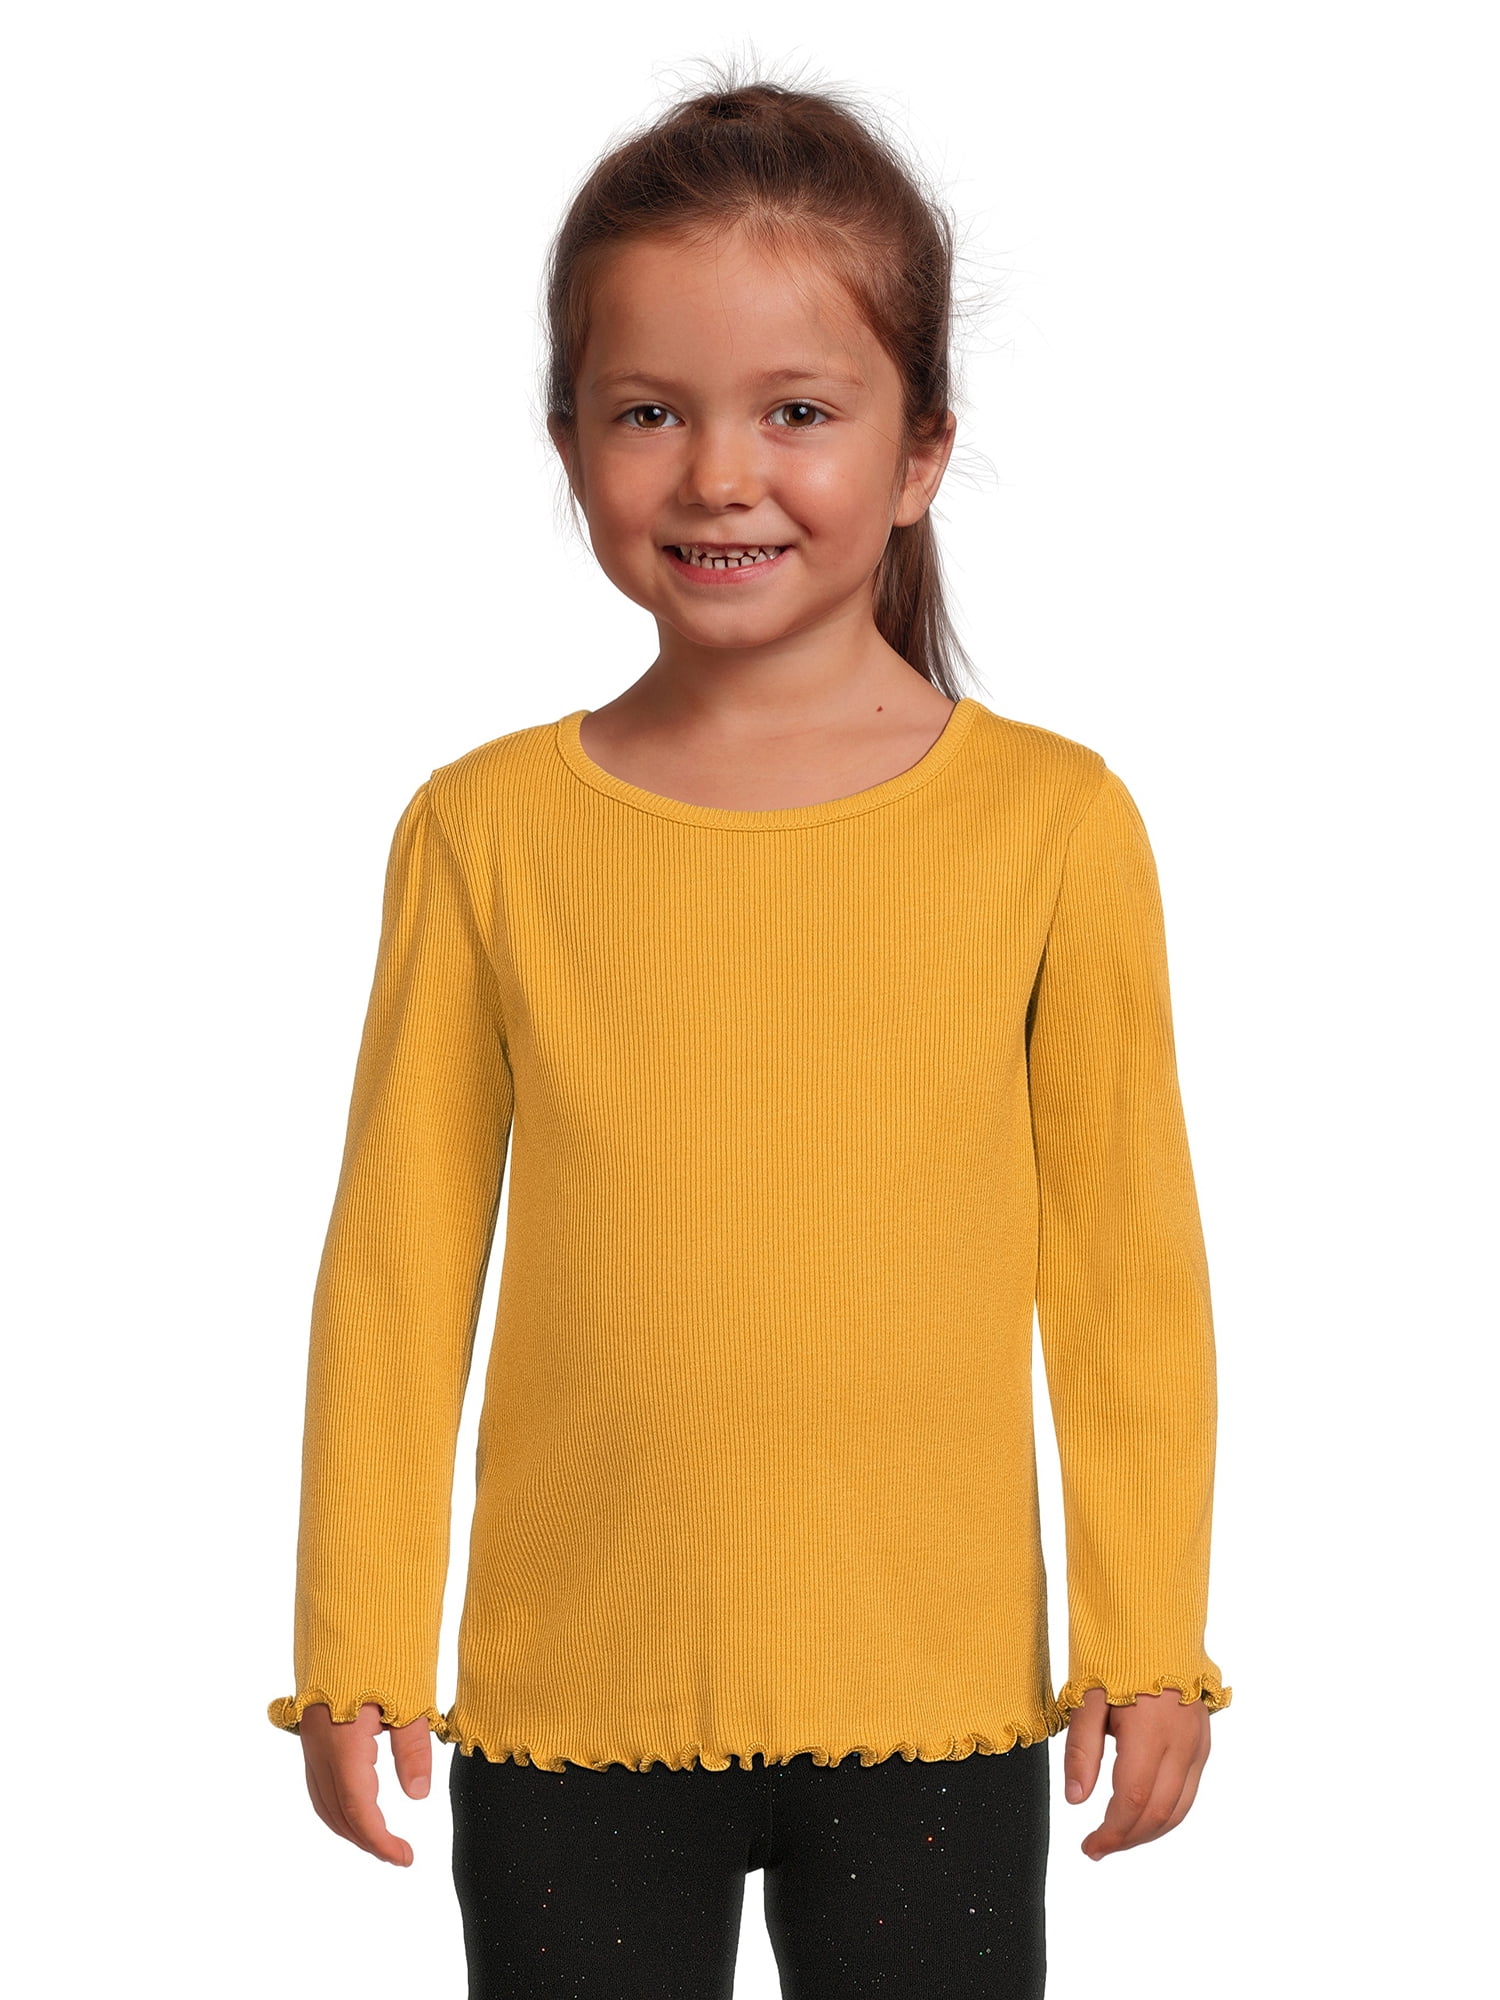 Girl Toddler Ribbed Sizes Long Sleeve Garanimals Top, 12M-5T